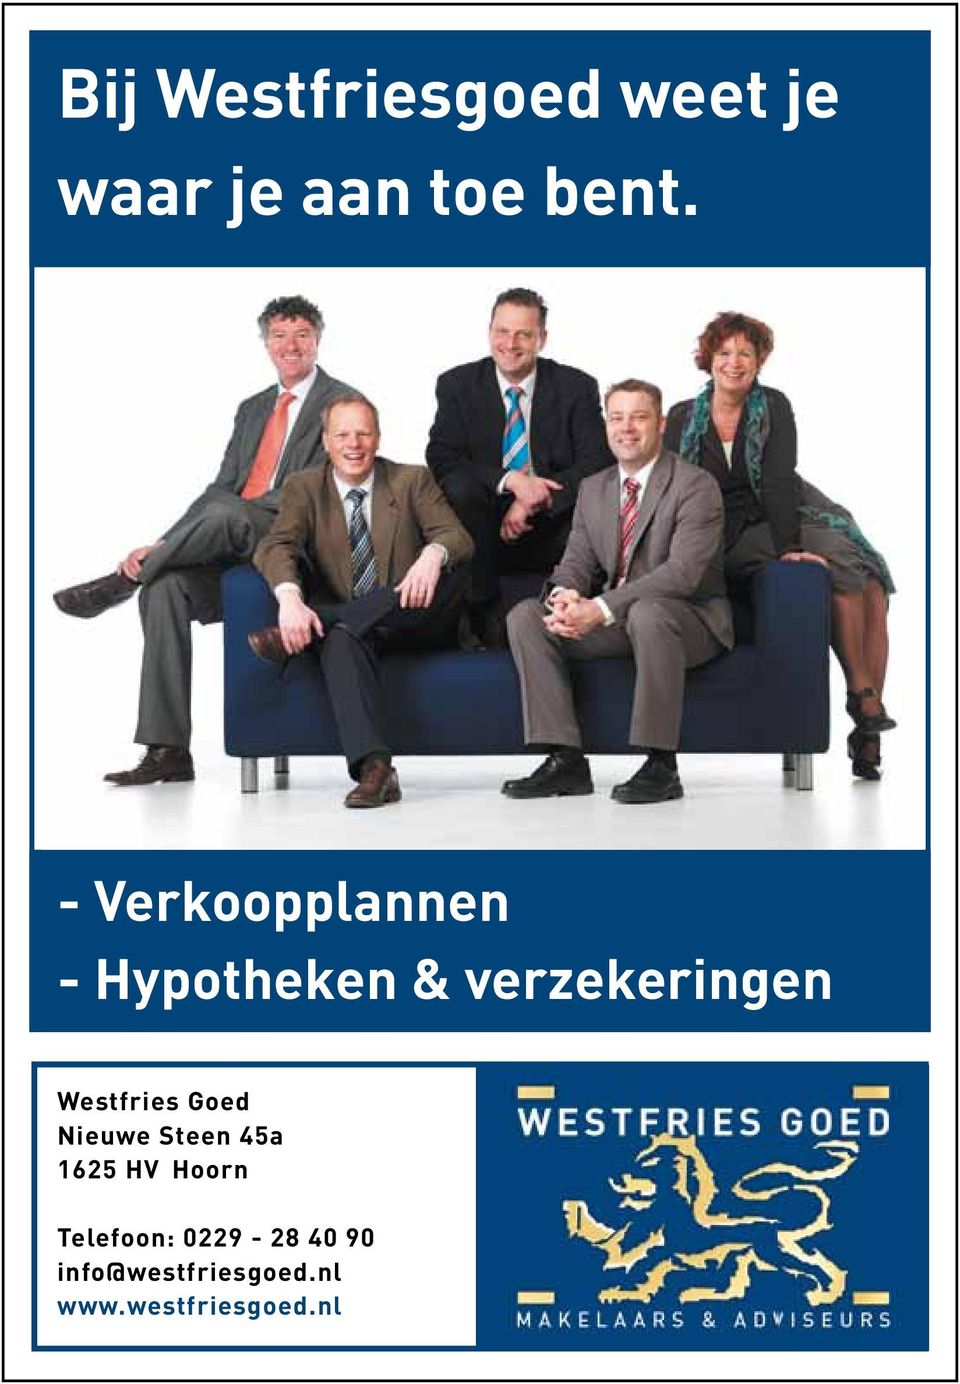 Westfries Goed Nieuwe Steen 45a 1625 HV Hoorn